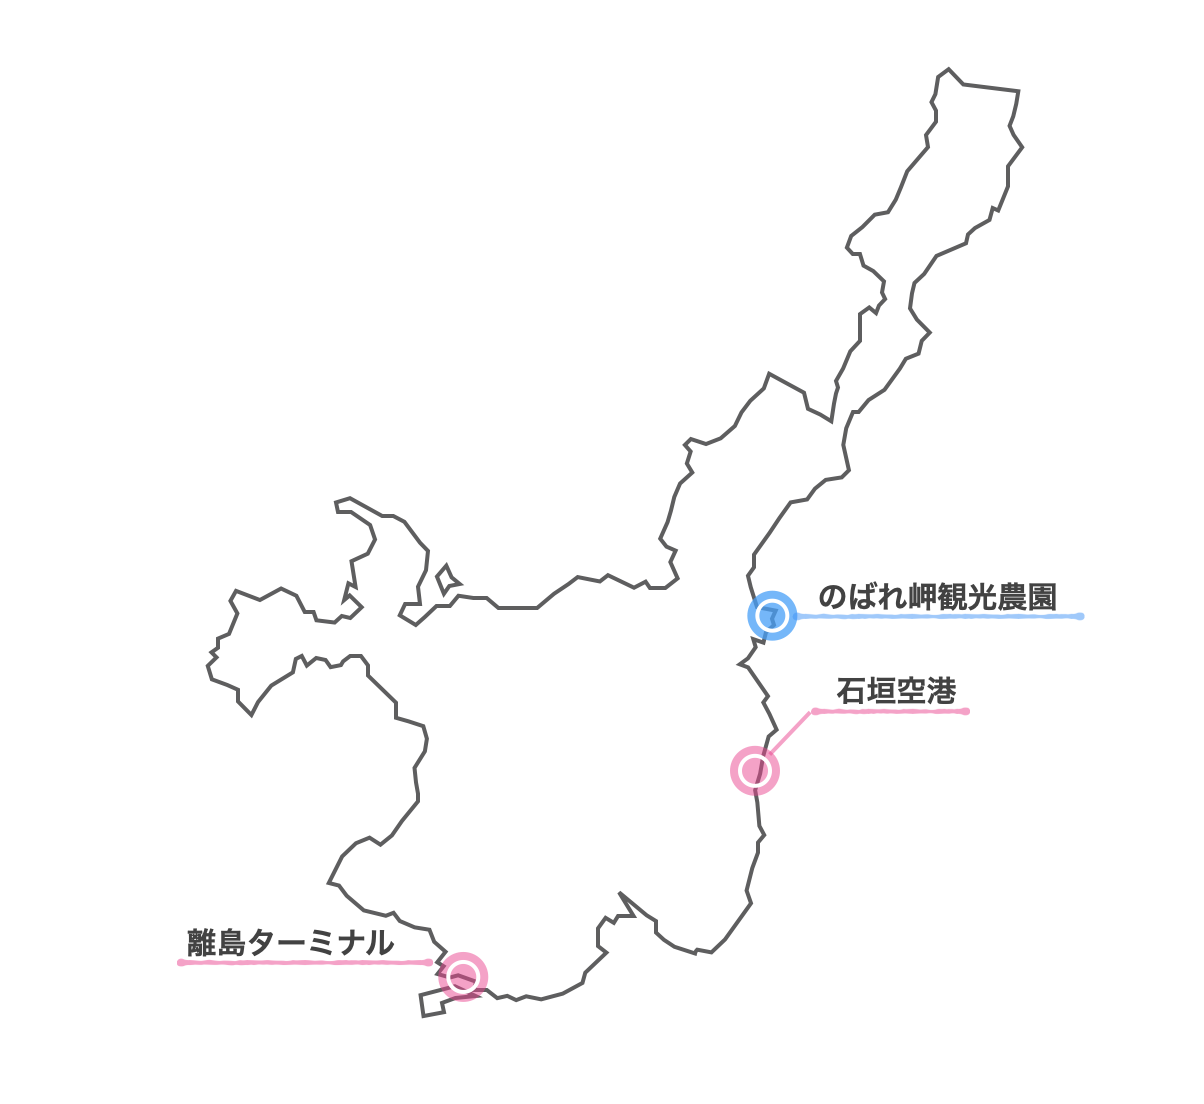 のばれ岬観光農園 地図